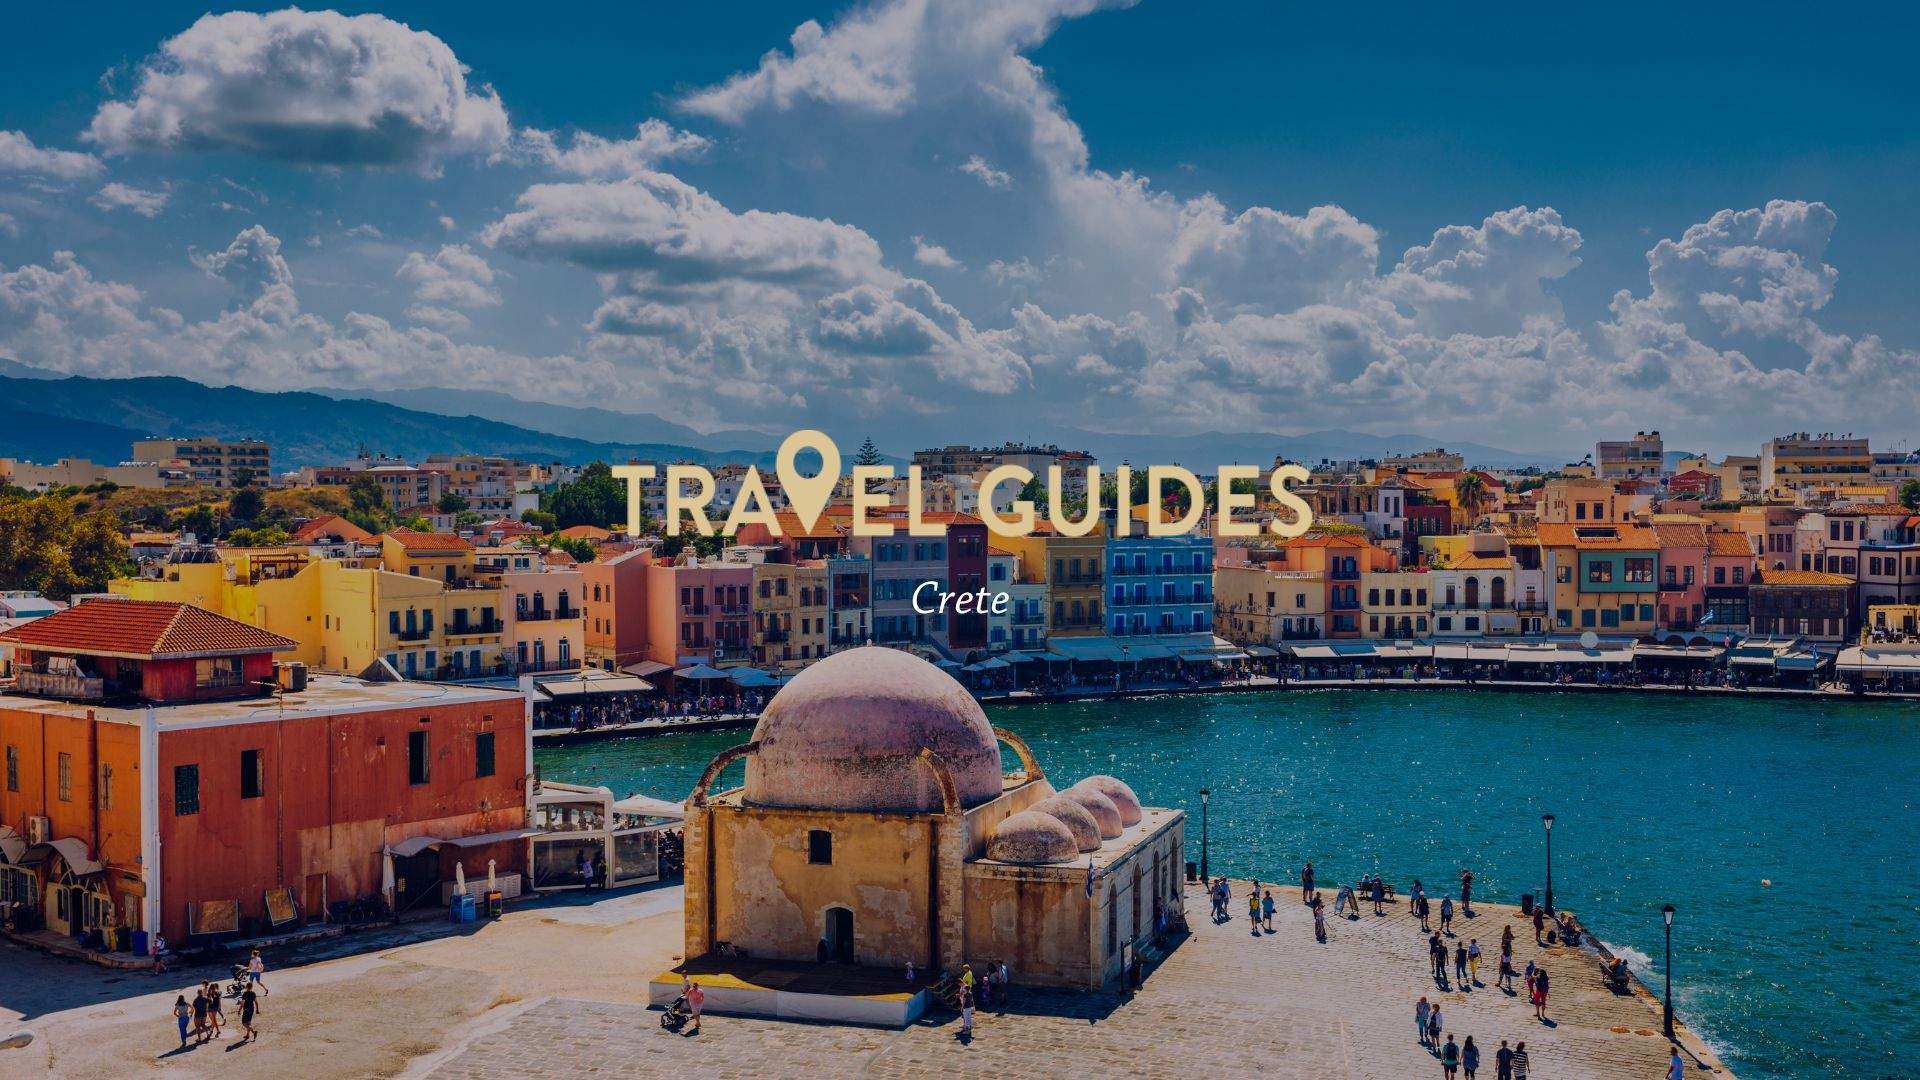 Travel Guide: Crete